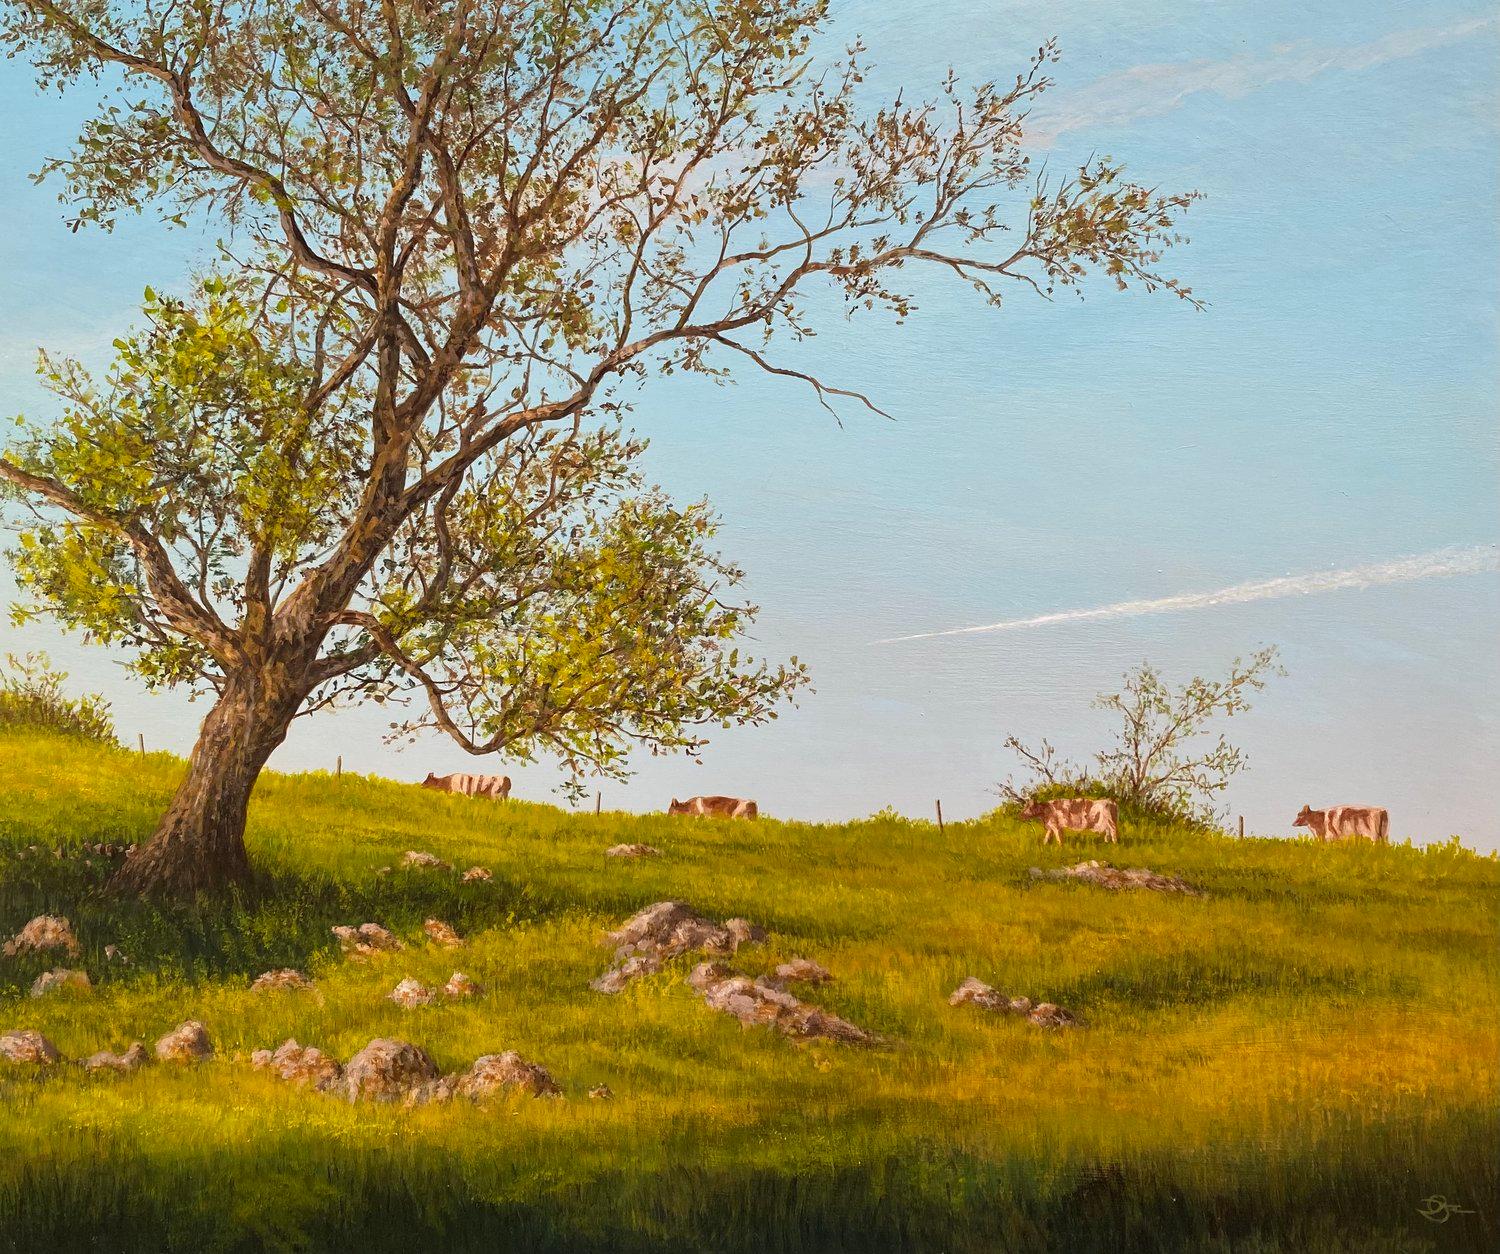 Del Bourree Bach, "Afternoon Parade", paysage rural de pâturage à vaches 